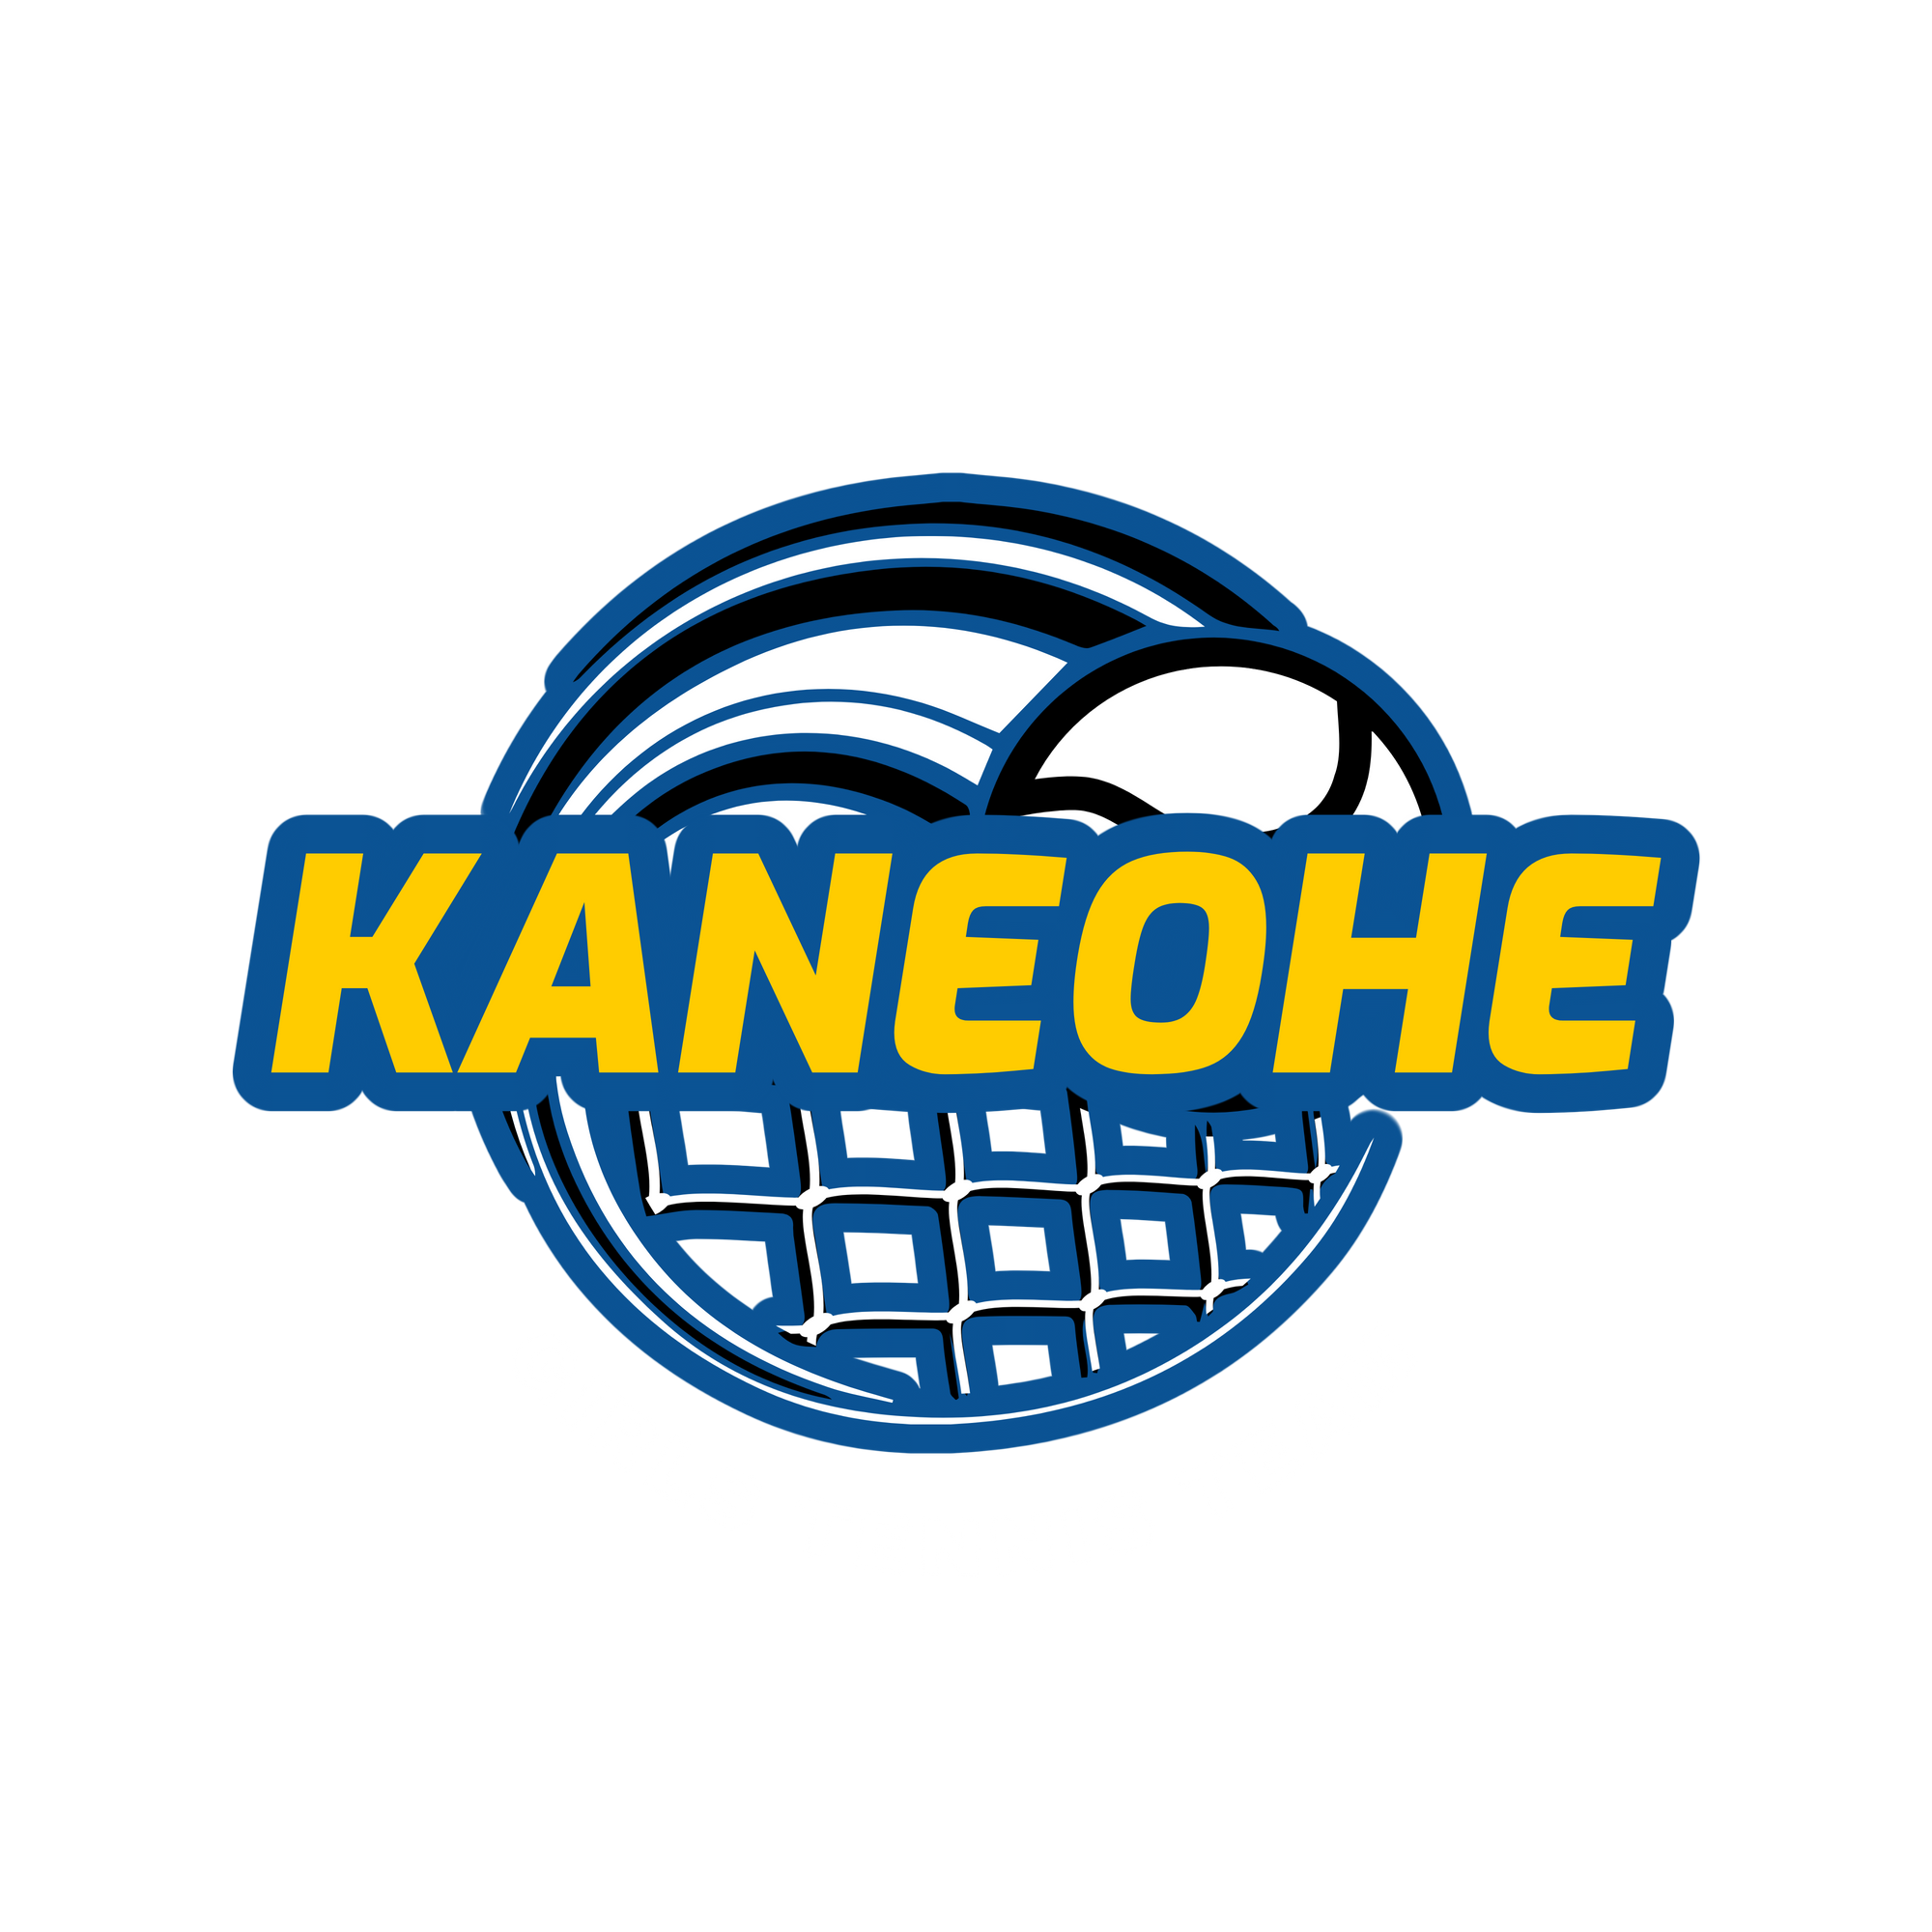 Na Pua O Kaneohe Tennis